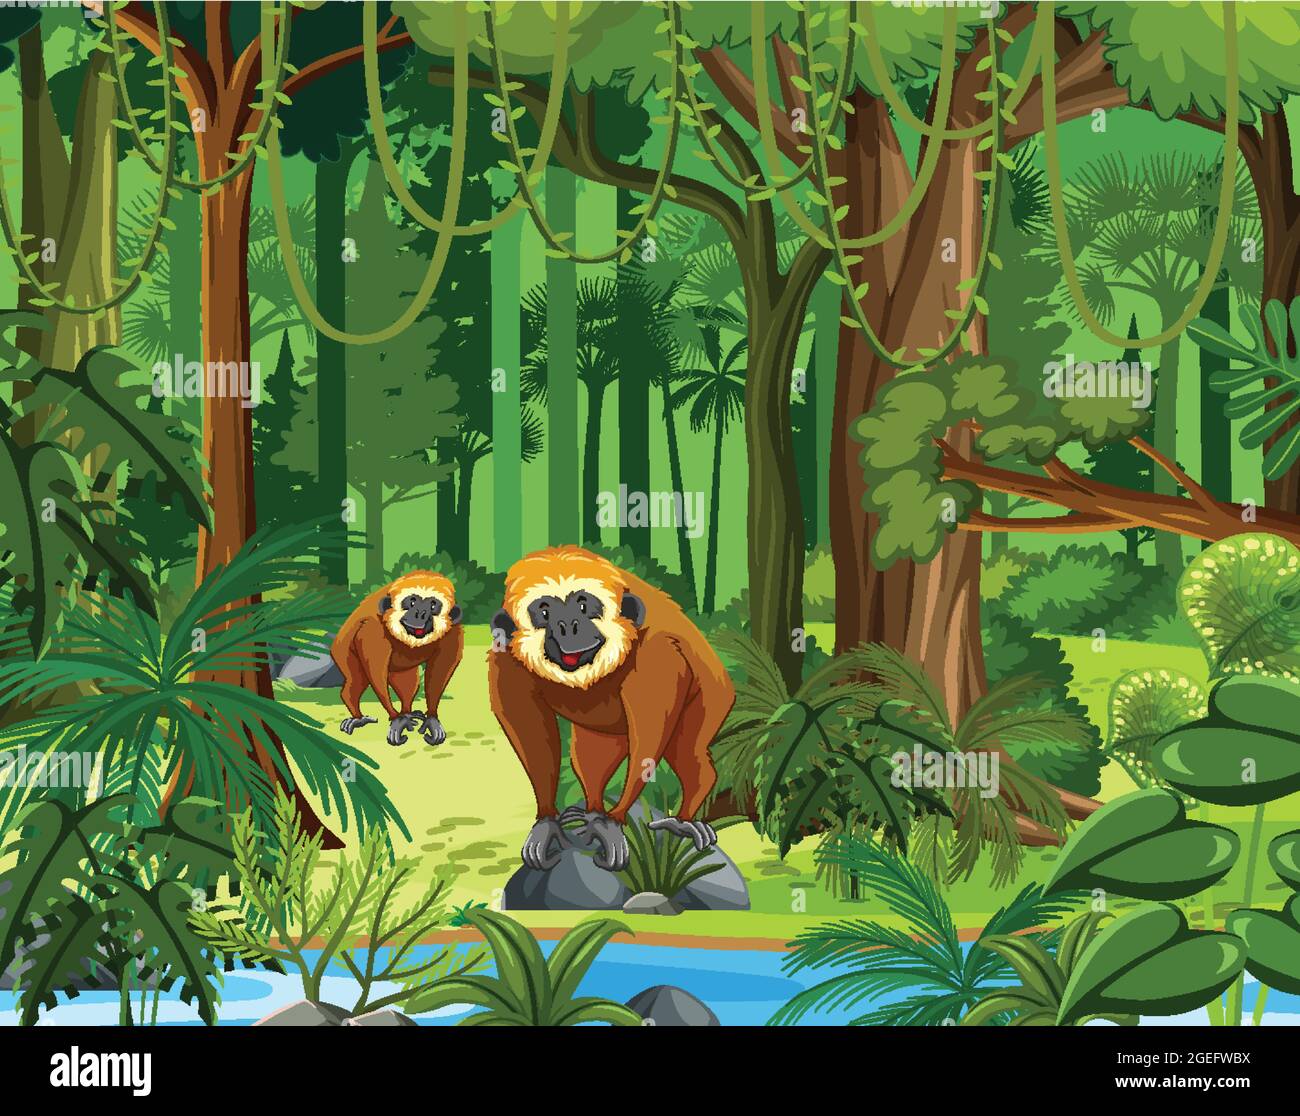 Animaux sauvages avec ruisseau qui coule à travers la scène de forêt illustration Illustration de Vecteur